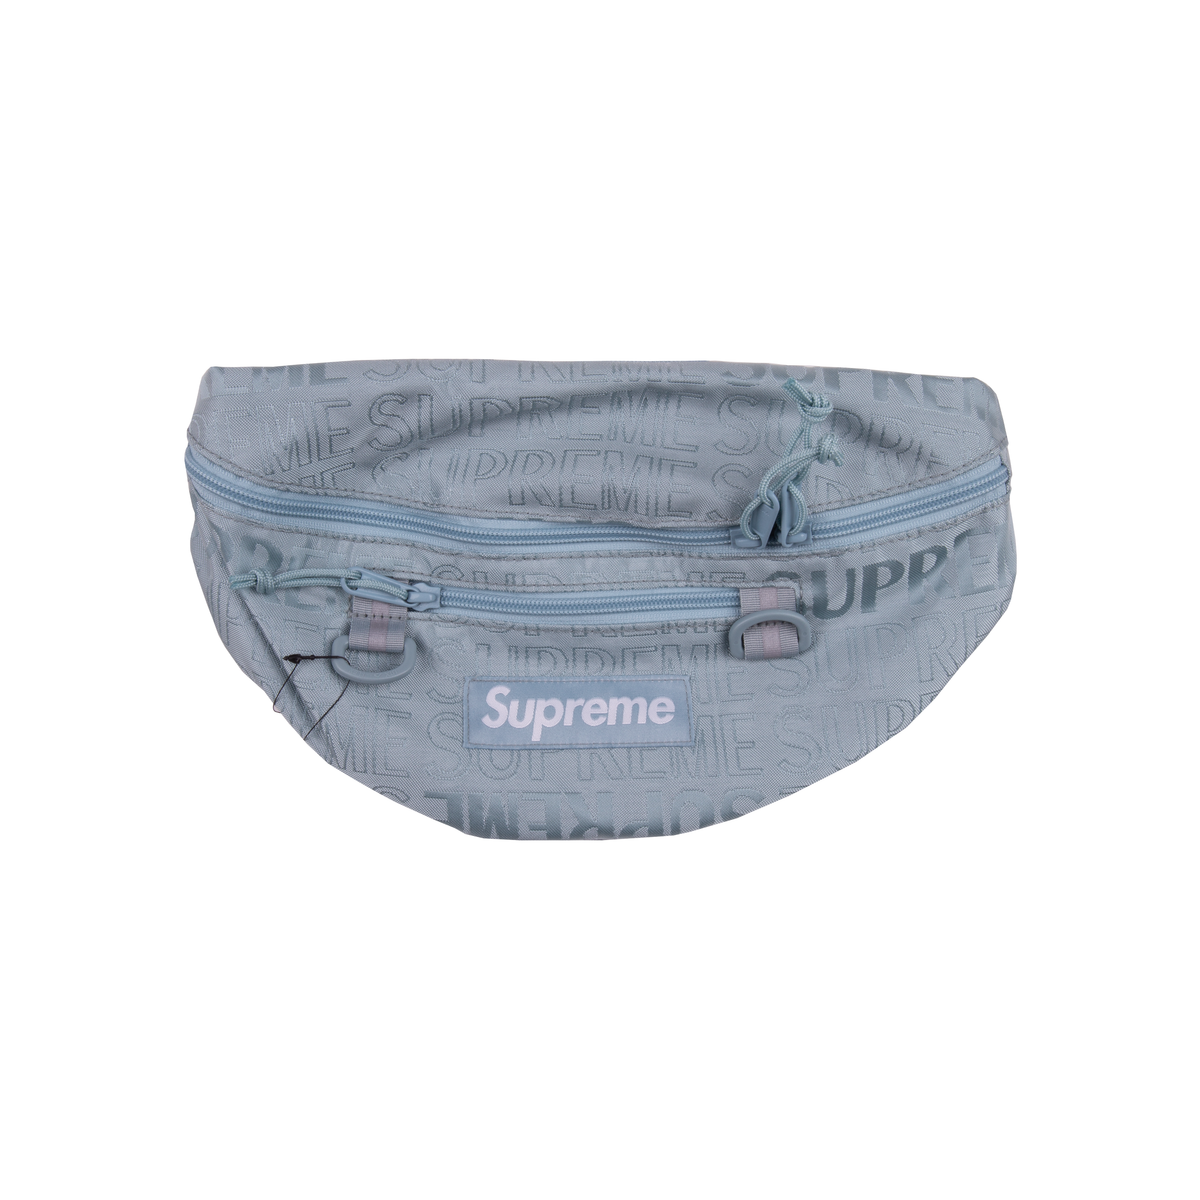 Supreme SS19 Ice Waist Bag – On The Arm